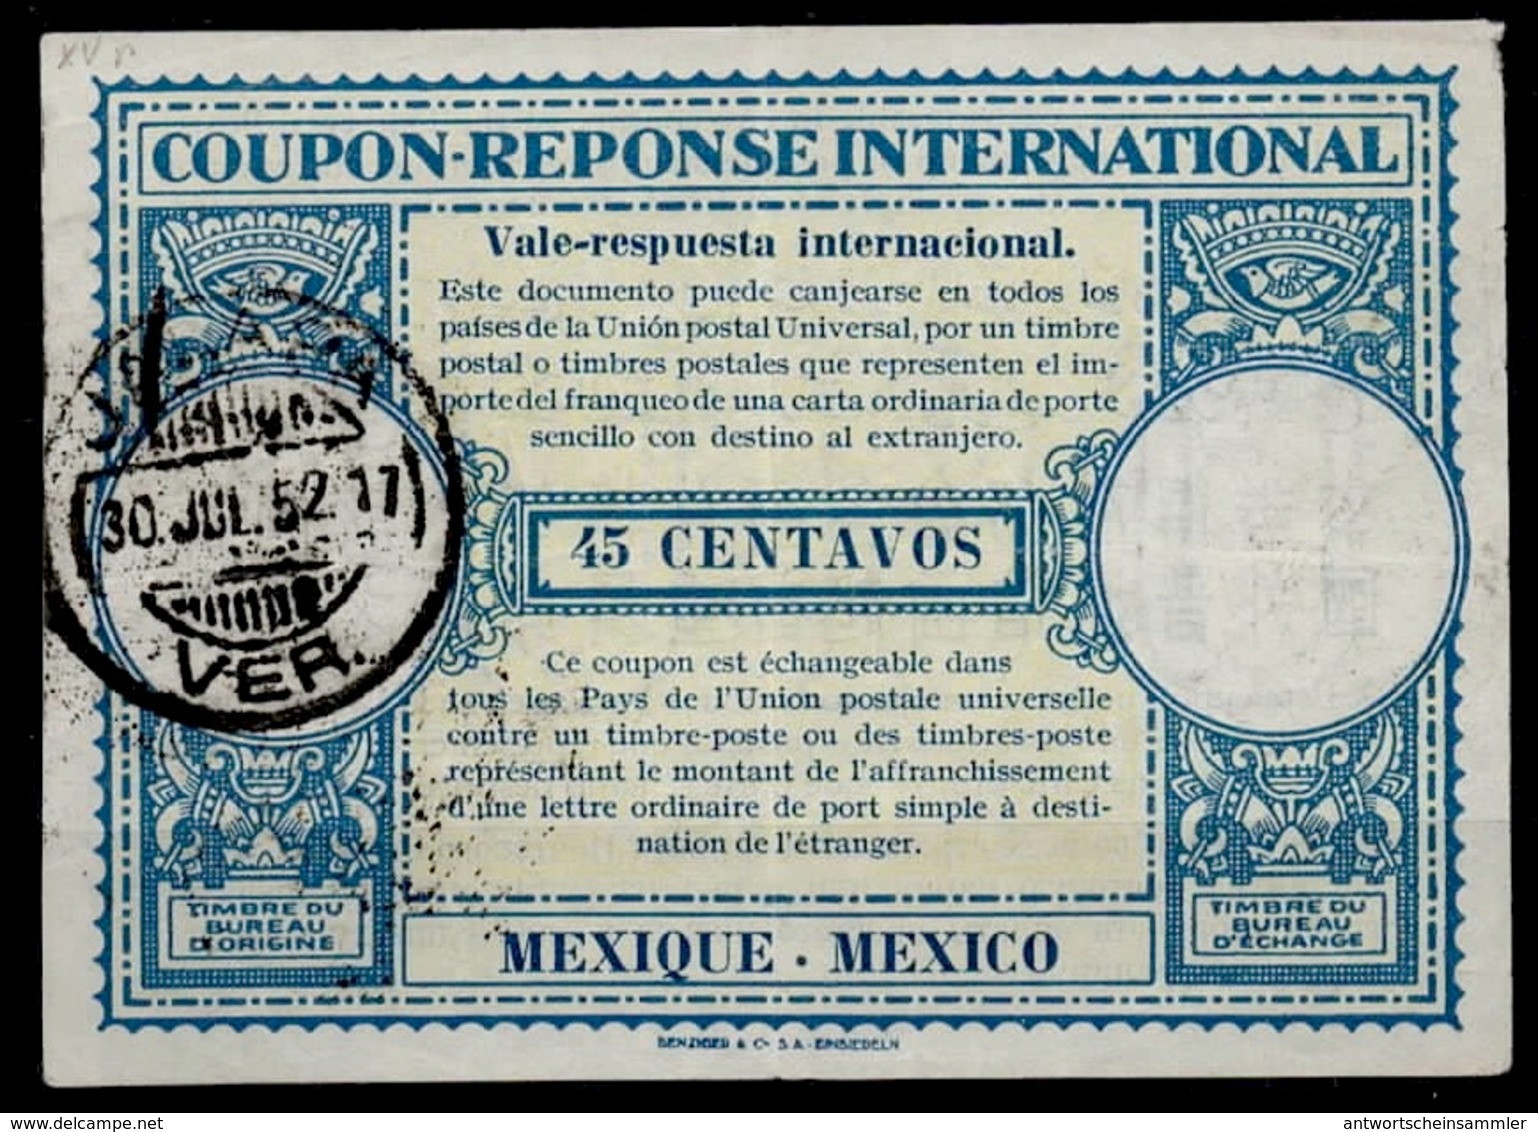 MEXICO / MEXIQUE Lo15  45 CENTAVOS International Reply Coupon Reponse Antwortschein IAS IRC O JALAPA 30.7.52 - Mexiko